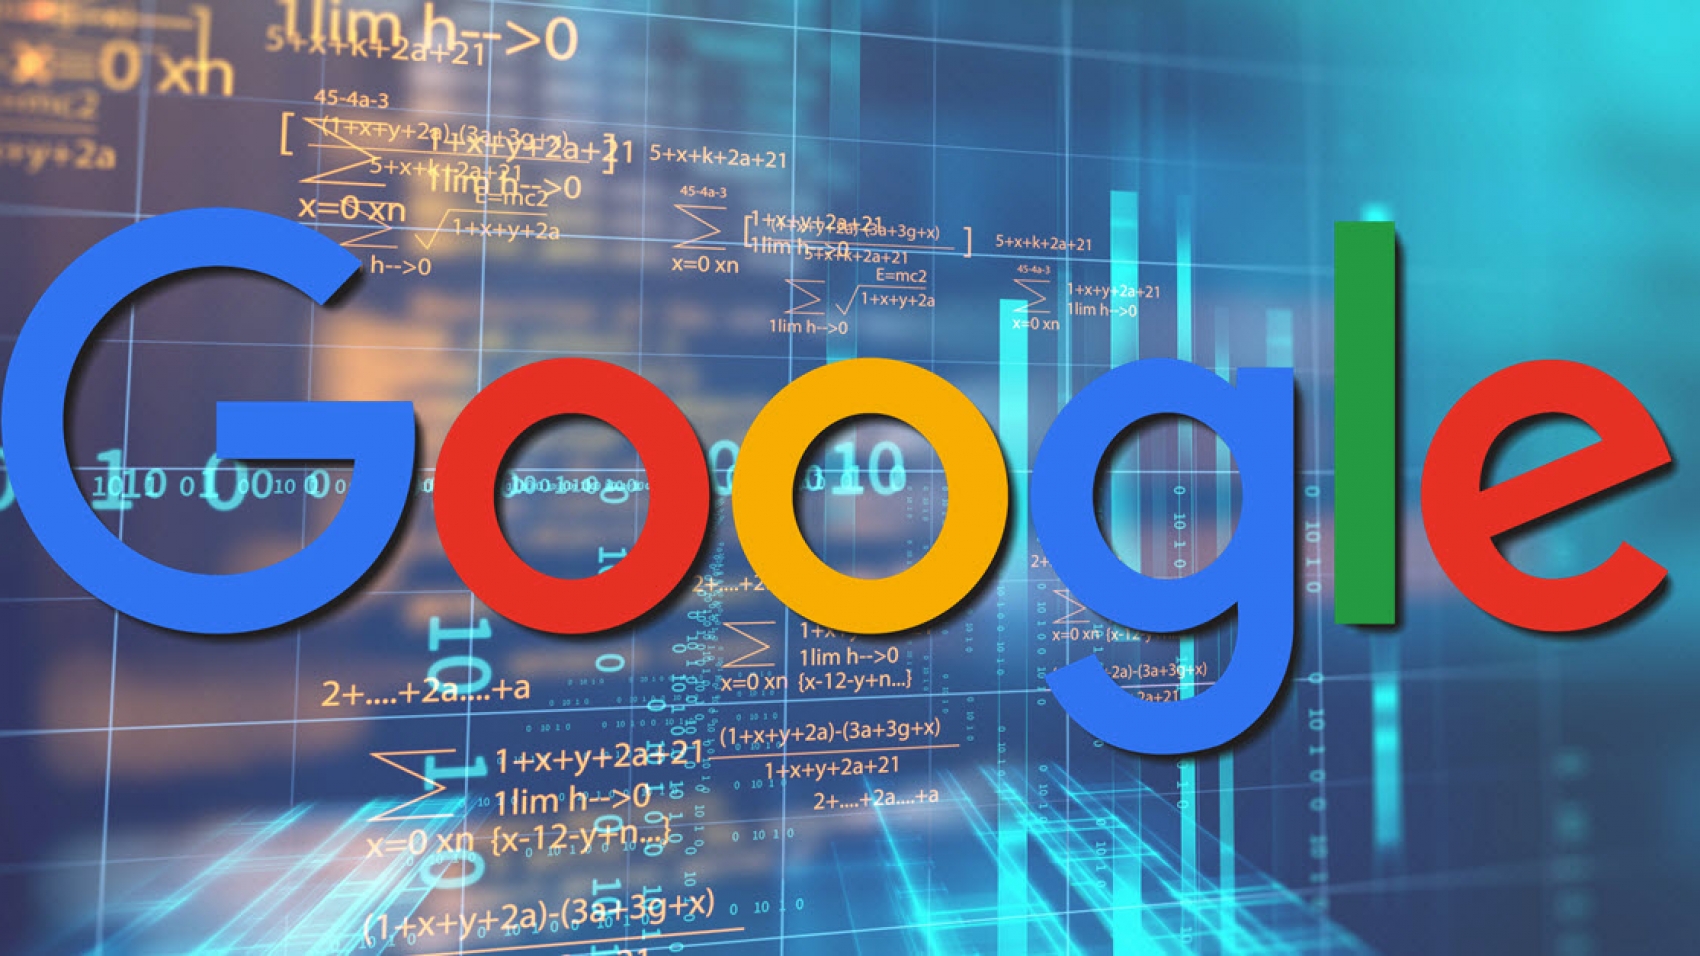 MUM của Google có phải là một yếu tố xếp hạng tìm kiếm không?